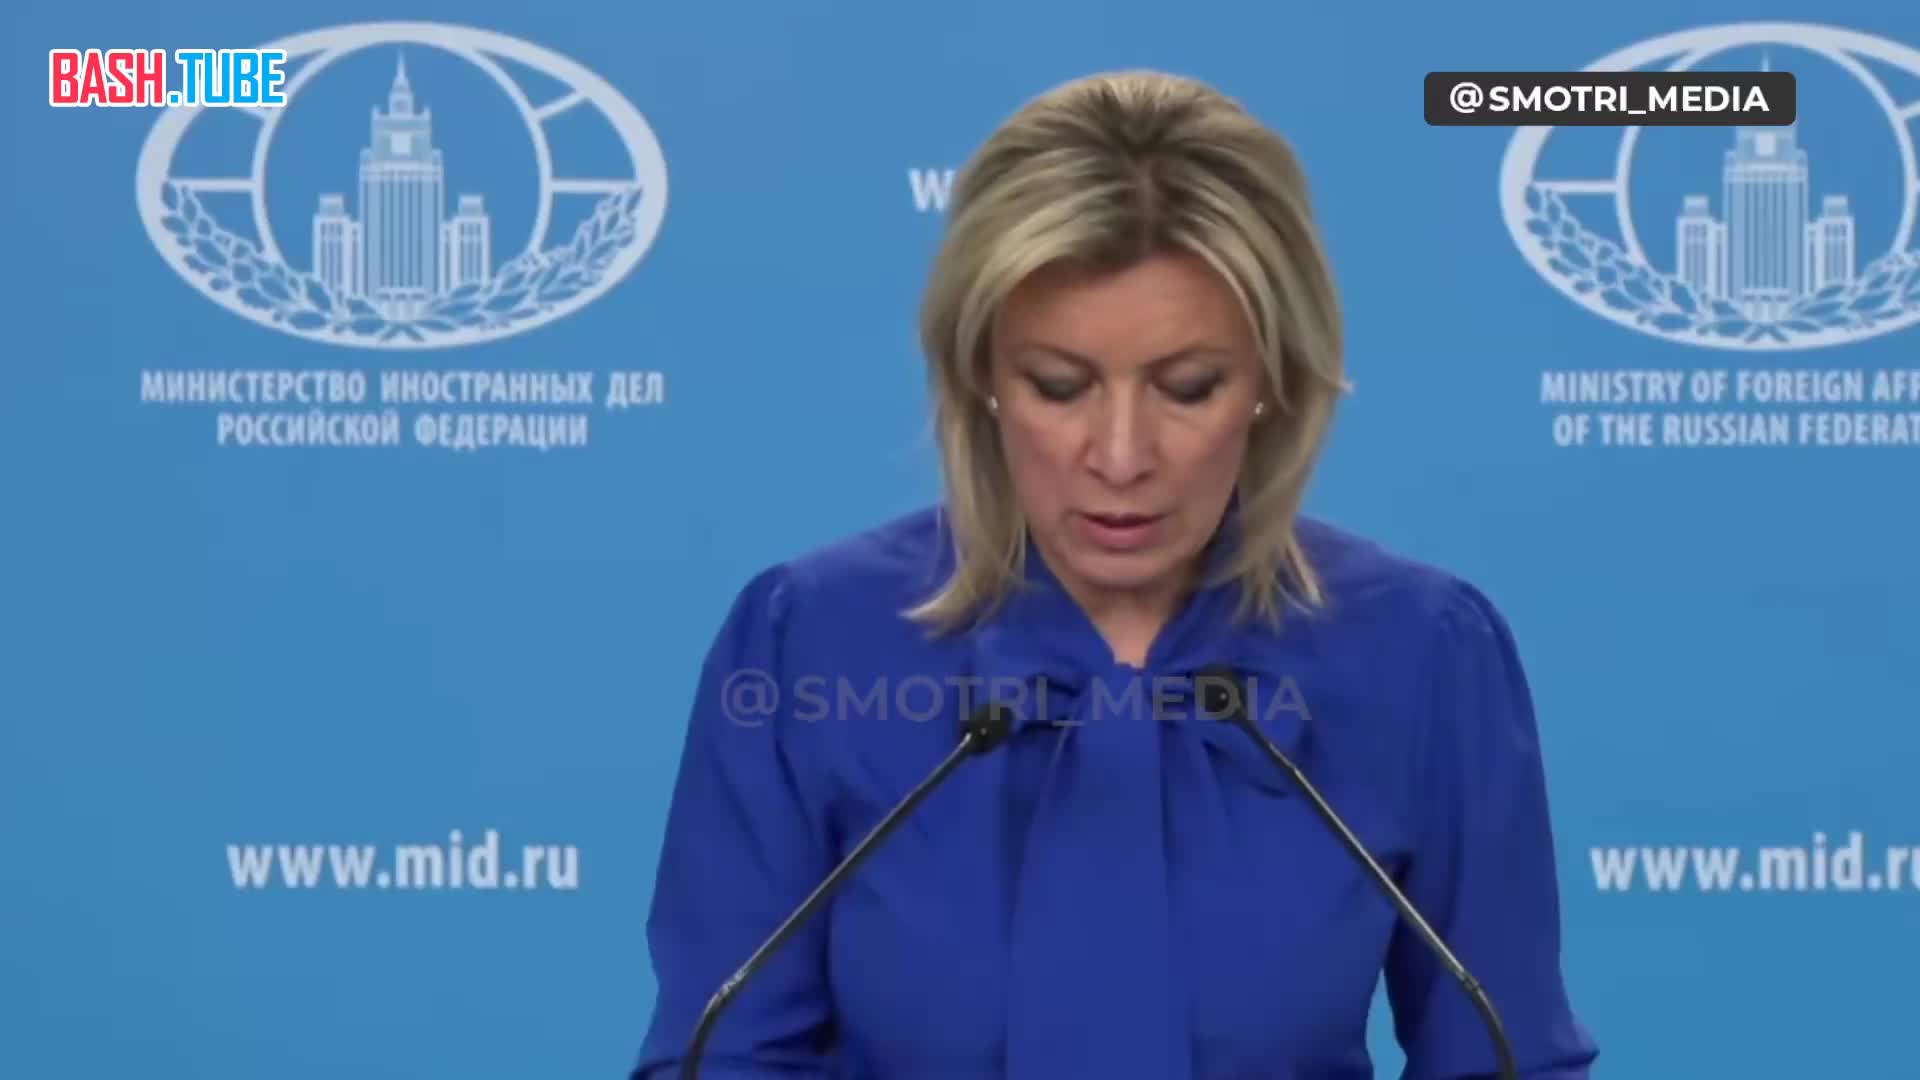  За агрессивными действиями против Крыма последует удар возмездия, заявила представитель МИД РФ Мария Захарова